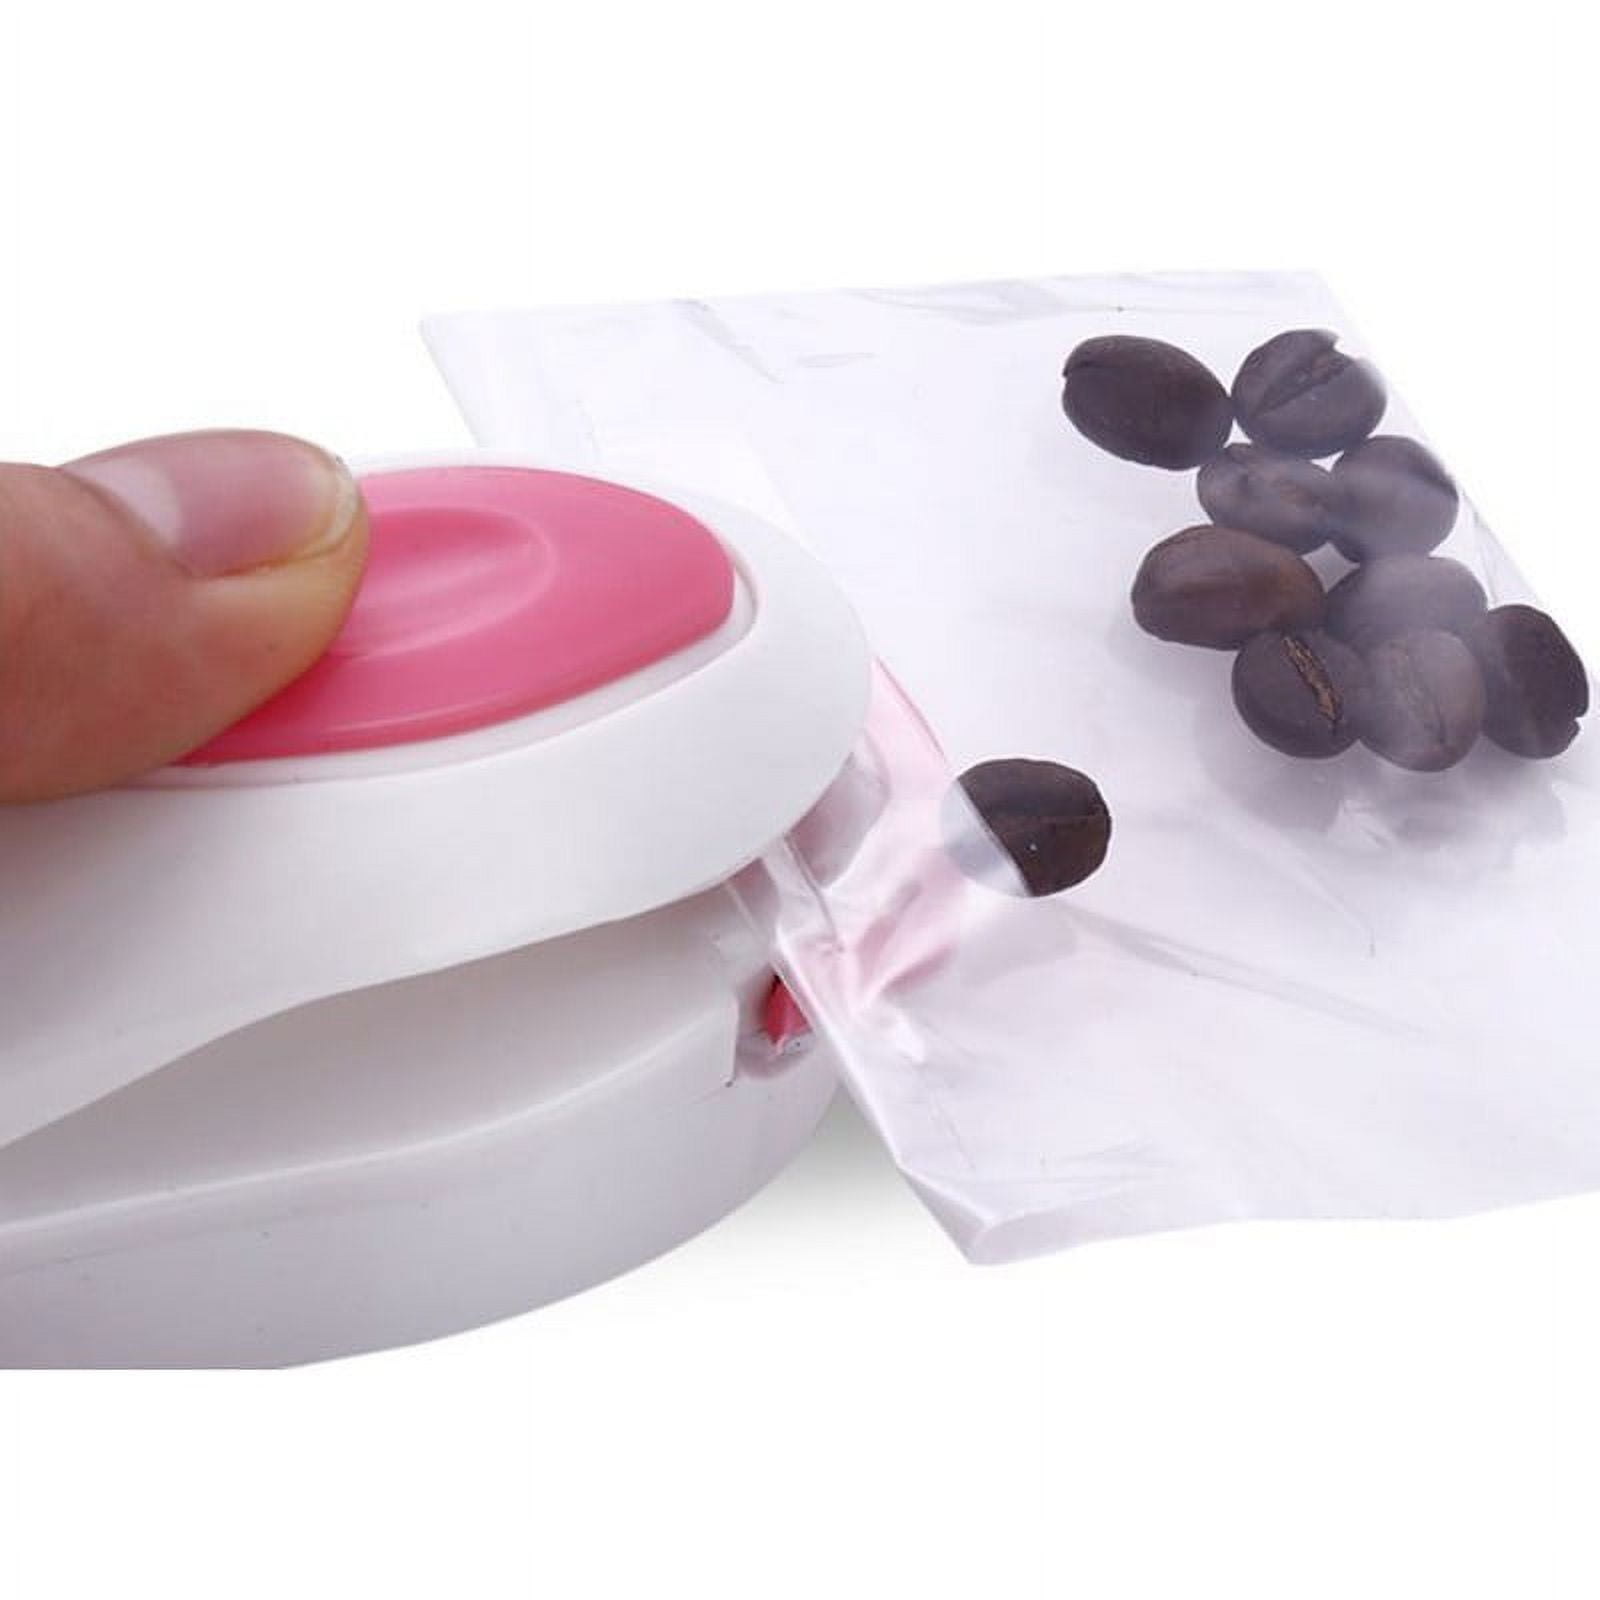 Mini Bag Sealer Portable Food Seal Machine For Plastic Bags - Temu